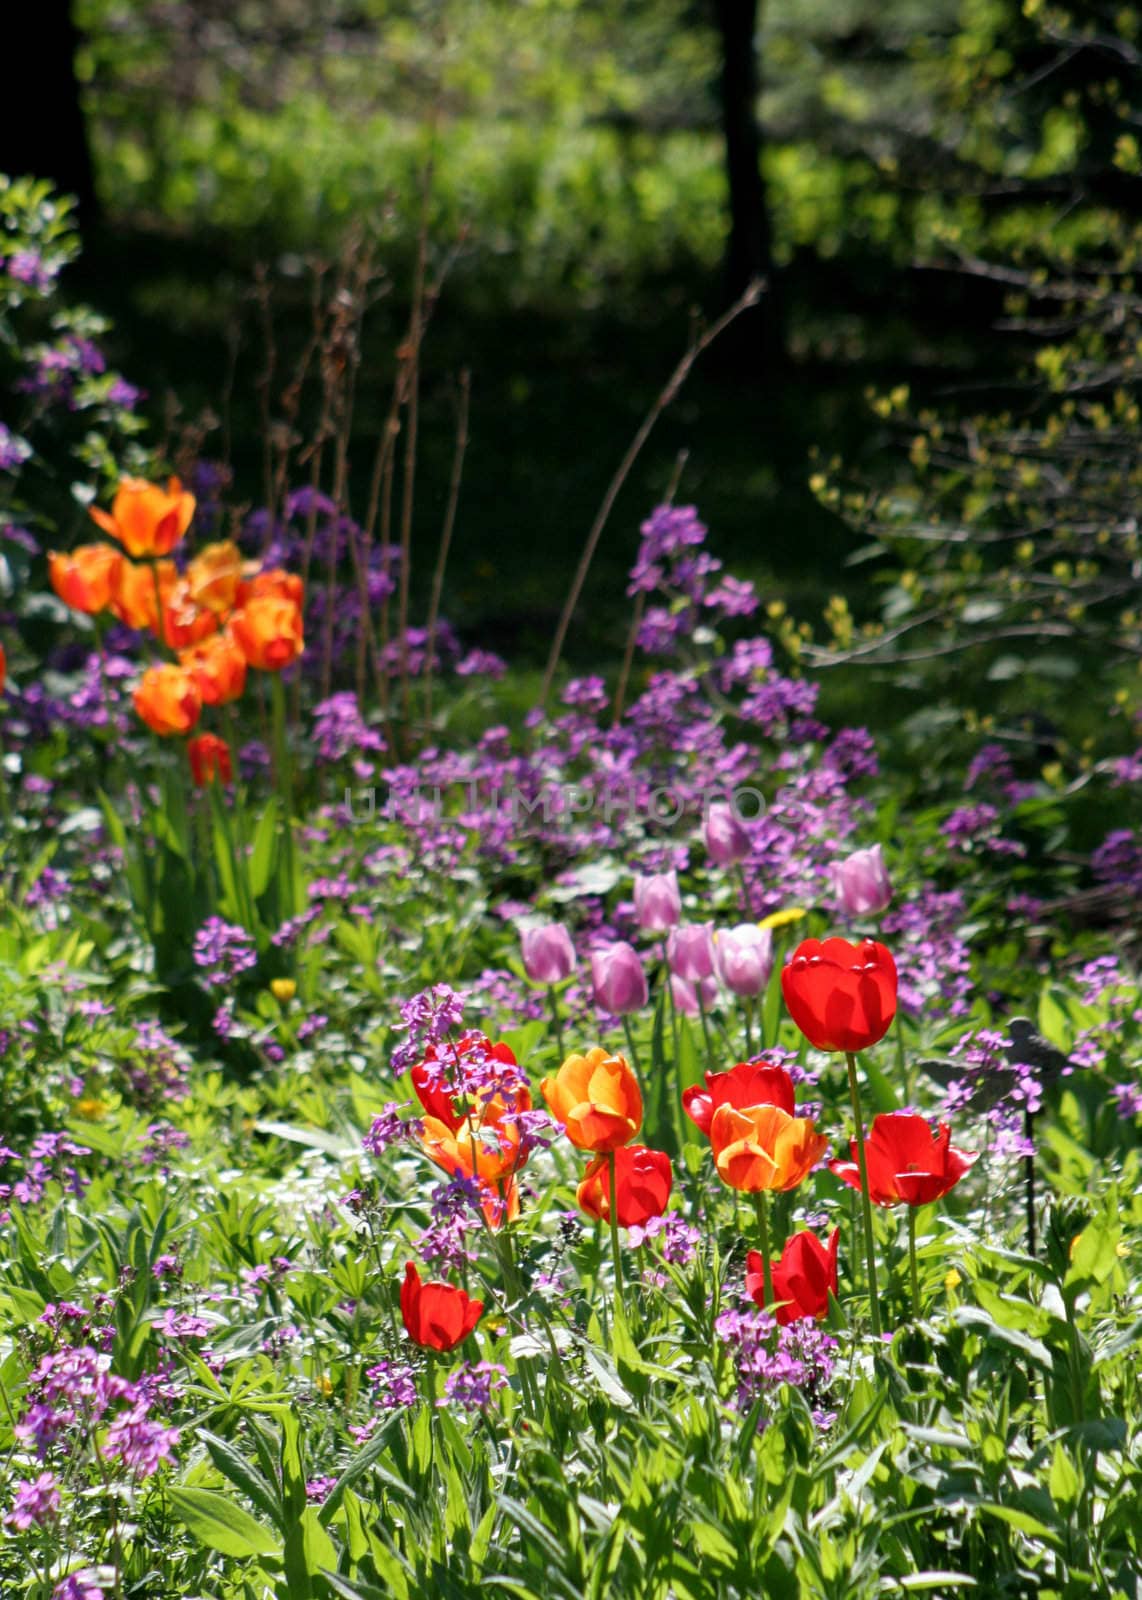 A spring garden in bright sunlight.